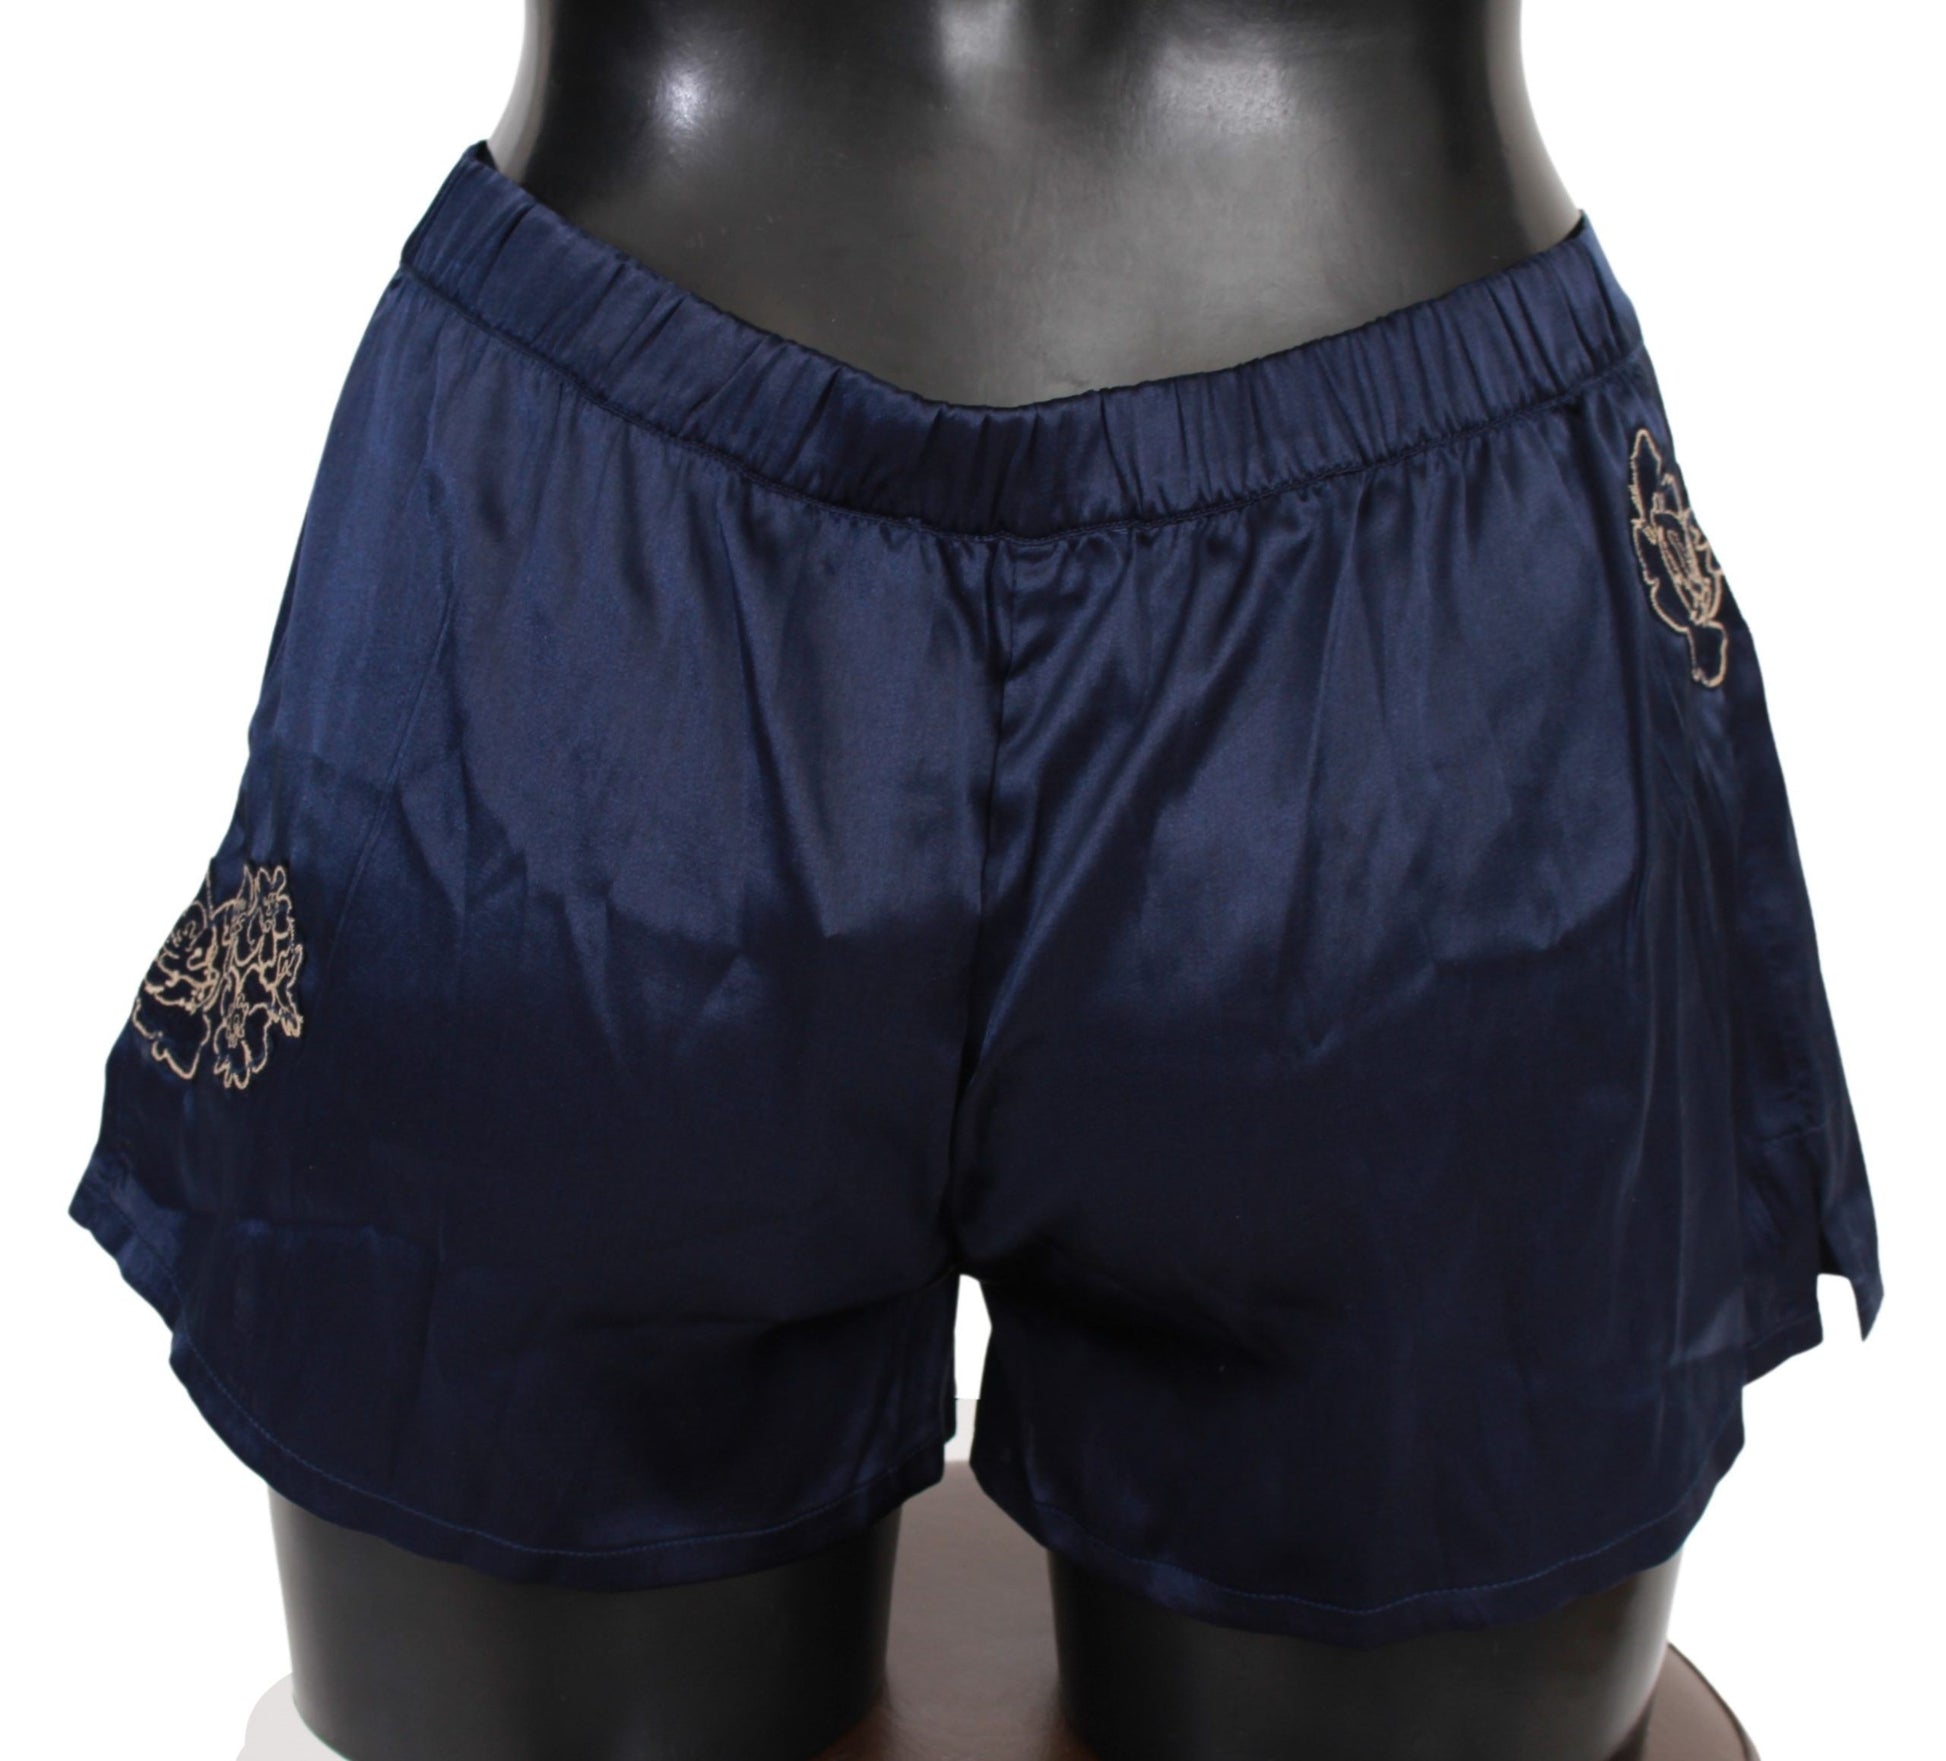 Chic Blue Lingerie Shorts - Pure Cotton Comfort